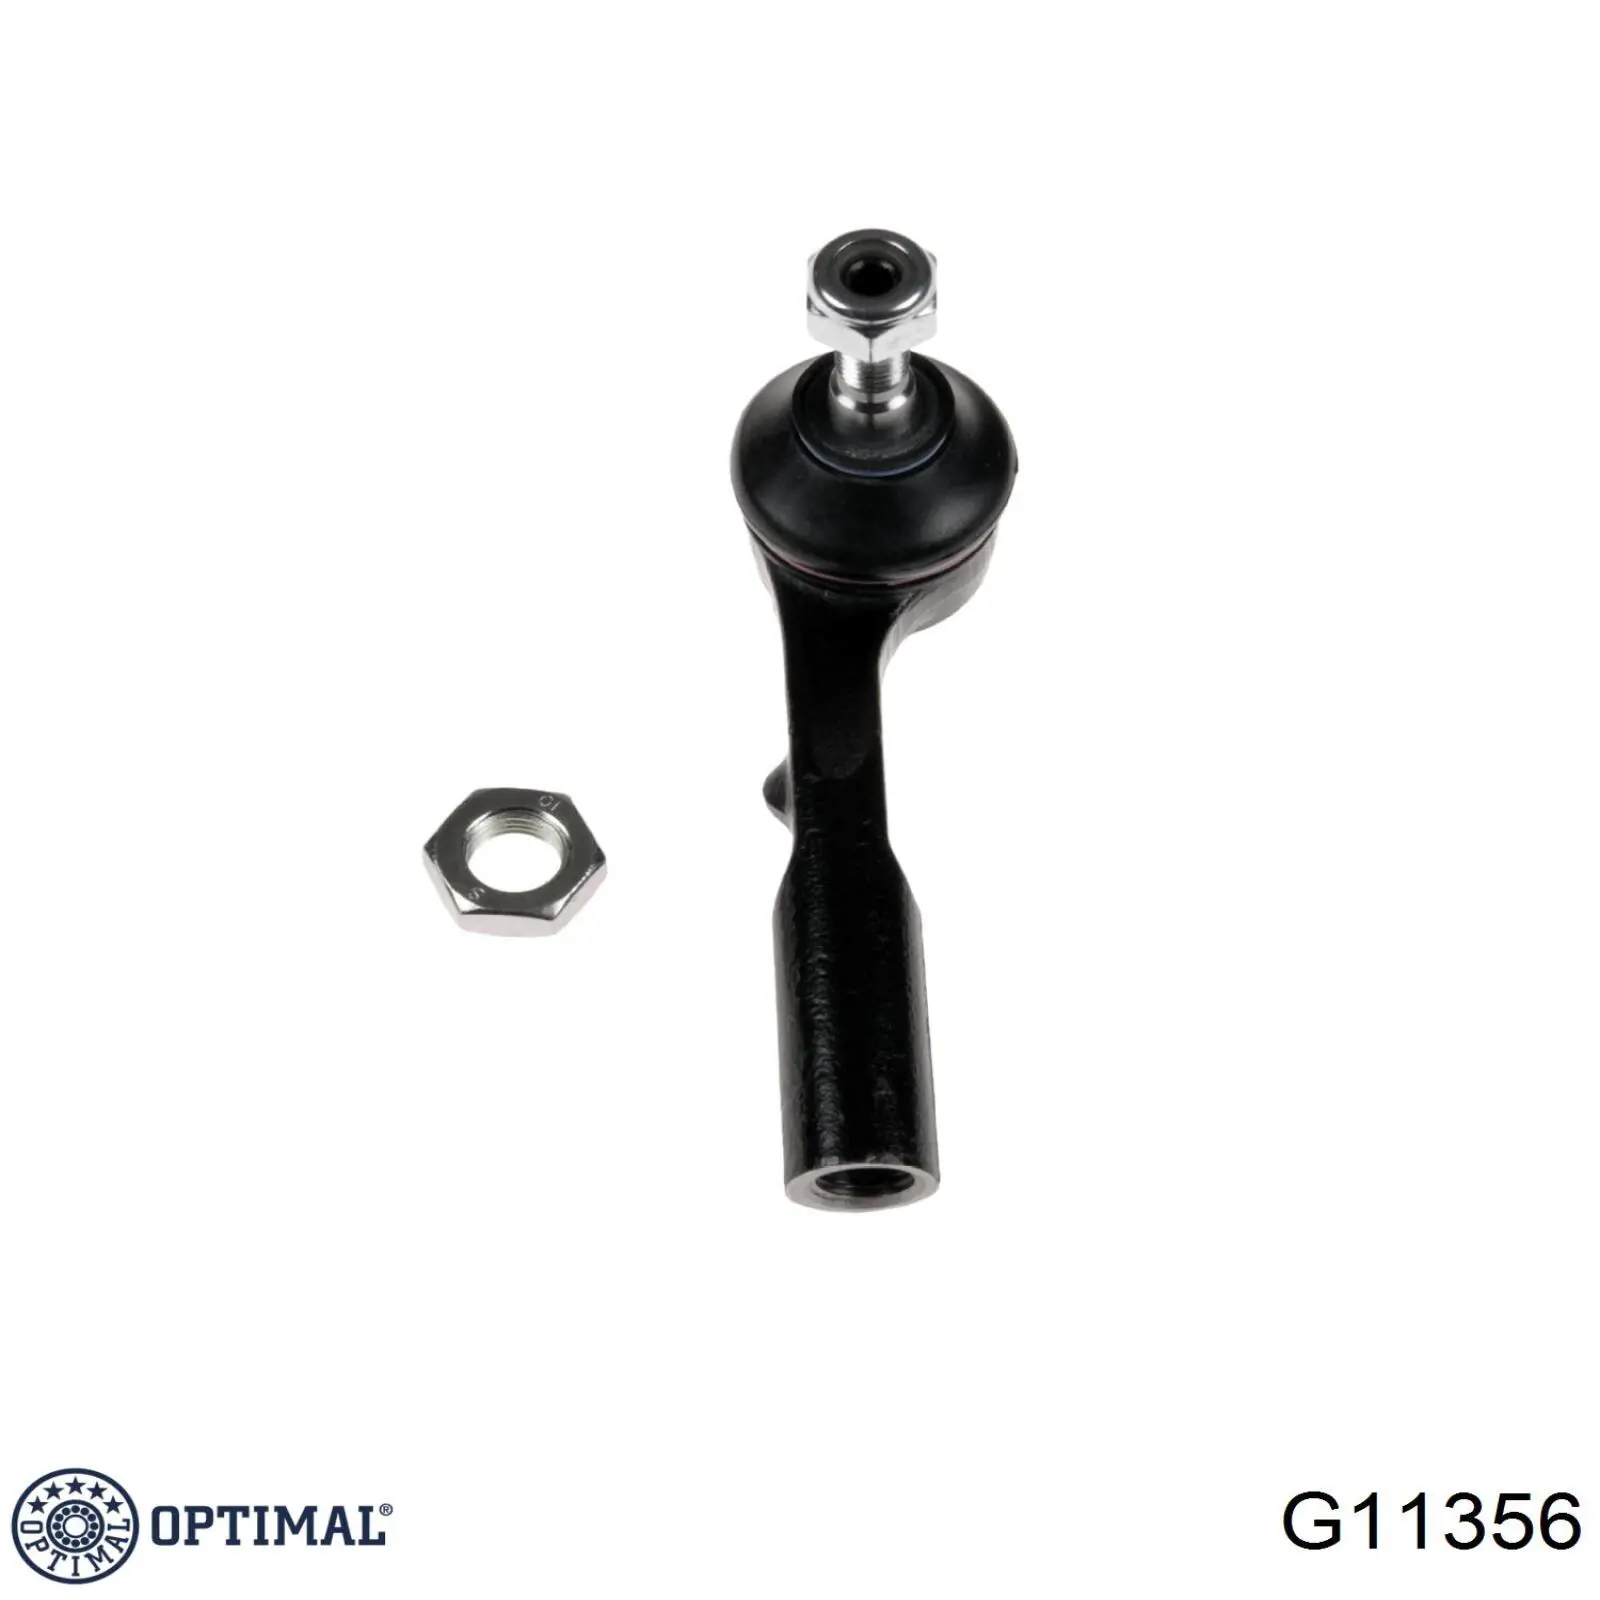 G11356 Optimal rótula barra de acoplamiento exterior